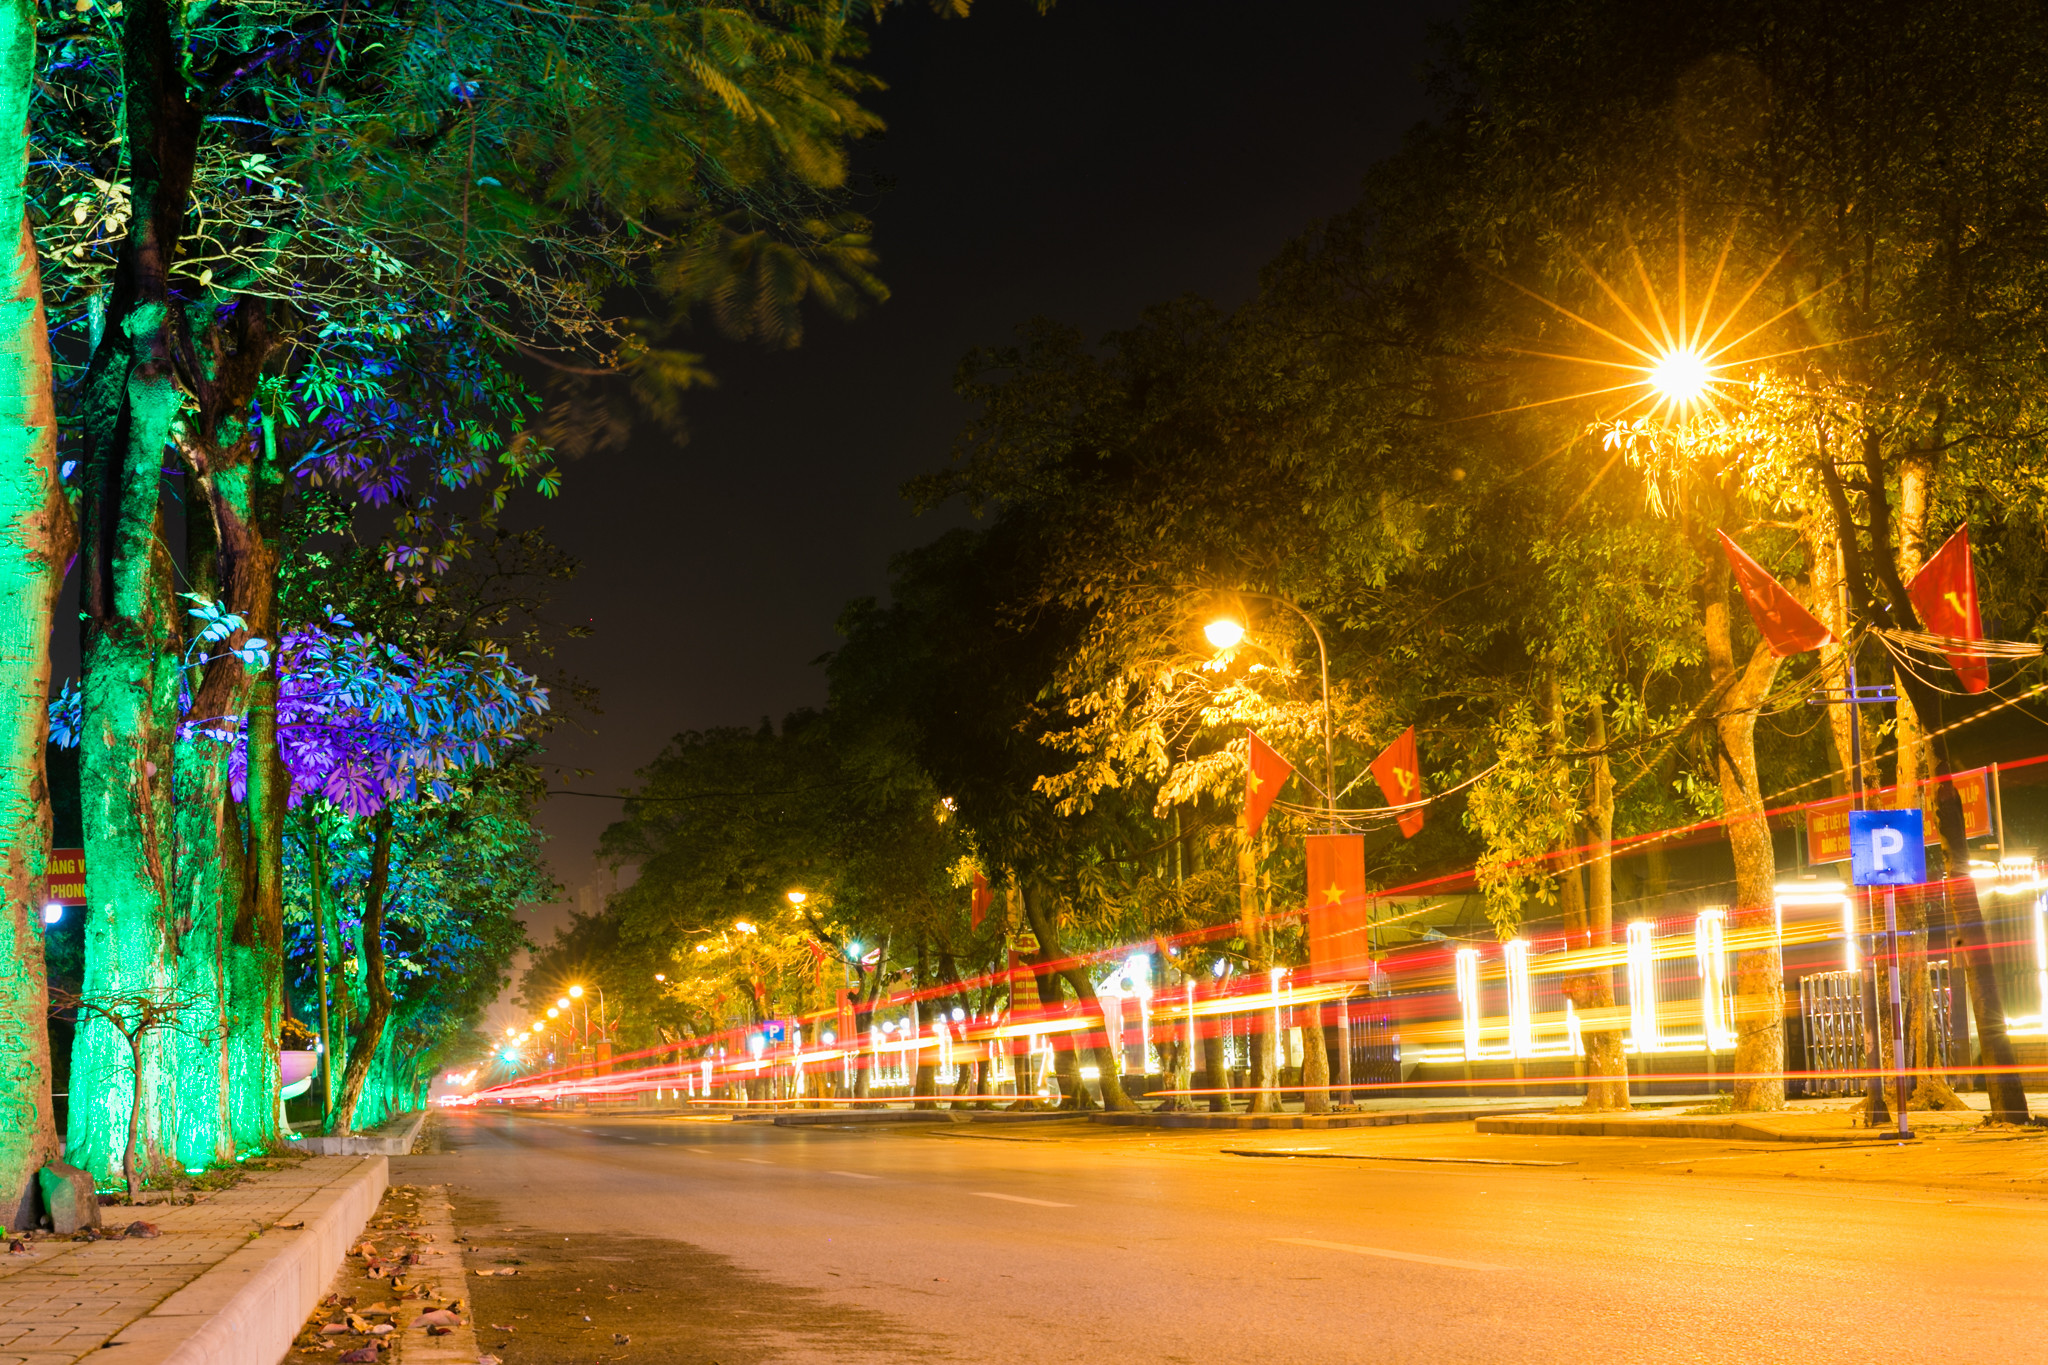 Tuyến đường Lê Mao trở nên lung linh hơn bởi những ánh sáng phát ra từ các hàng cây, bờ tường và cả ánh đèn đường tảo nên một sắc màu huyền ảo hơn. Ảnh: Đức Anh